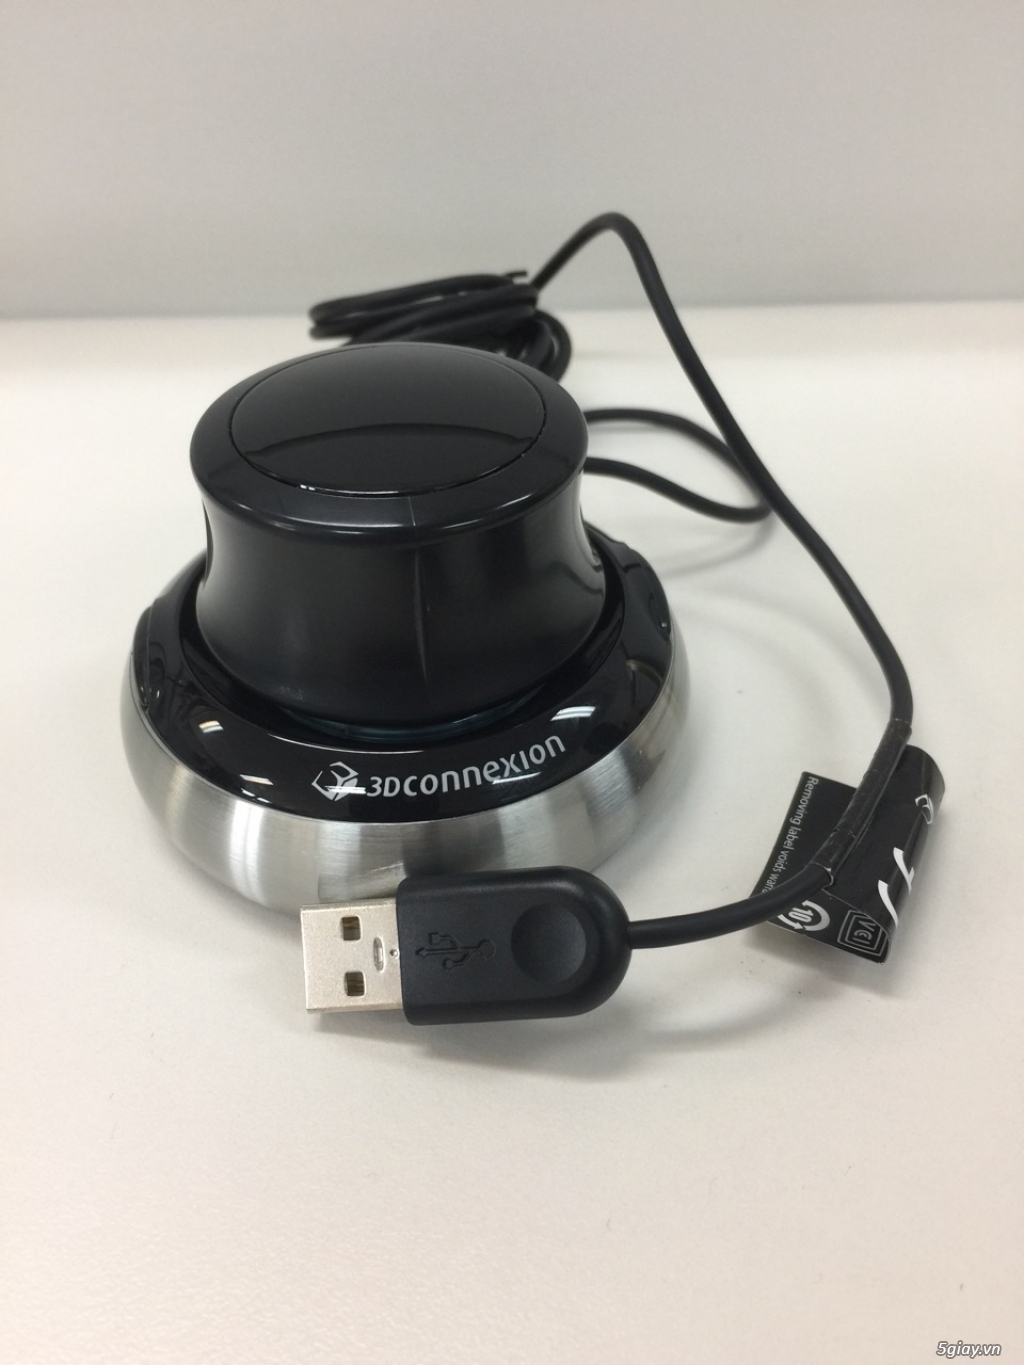 [Thanh lý giá rẻ] 3D Mouse Connexion Space và Creative Labs SB 0880 - 1